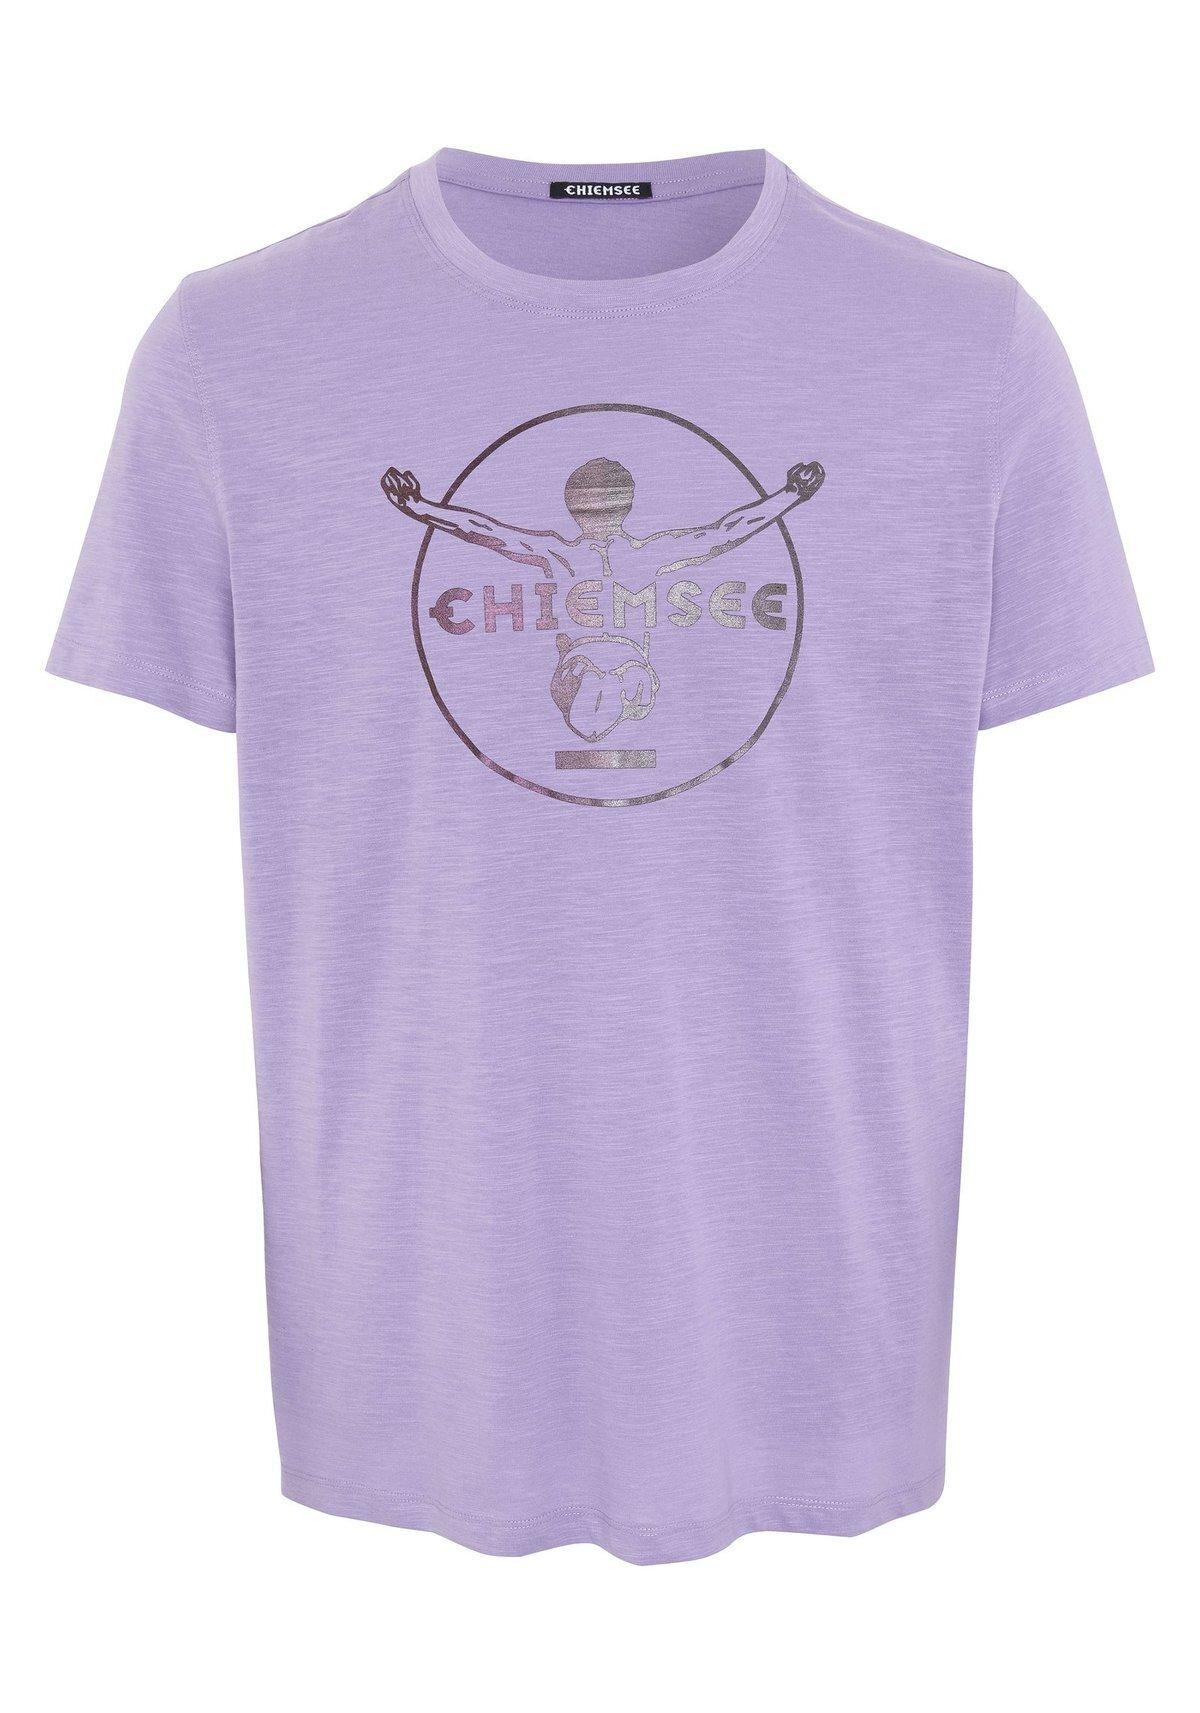 Chiemsee T-Shirt T-Shirt Herren Violett SportScheck Online von im Shop kaufen